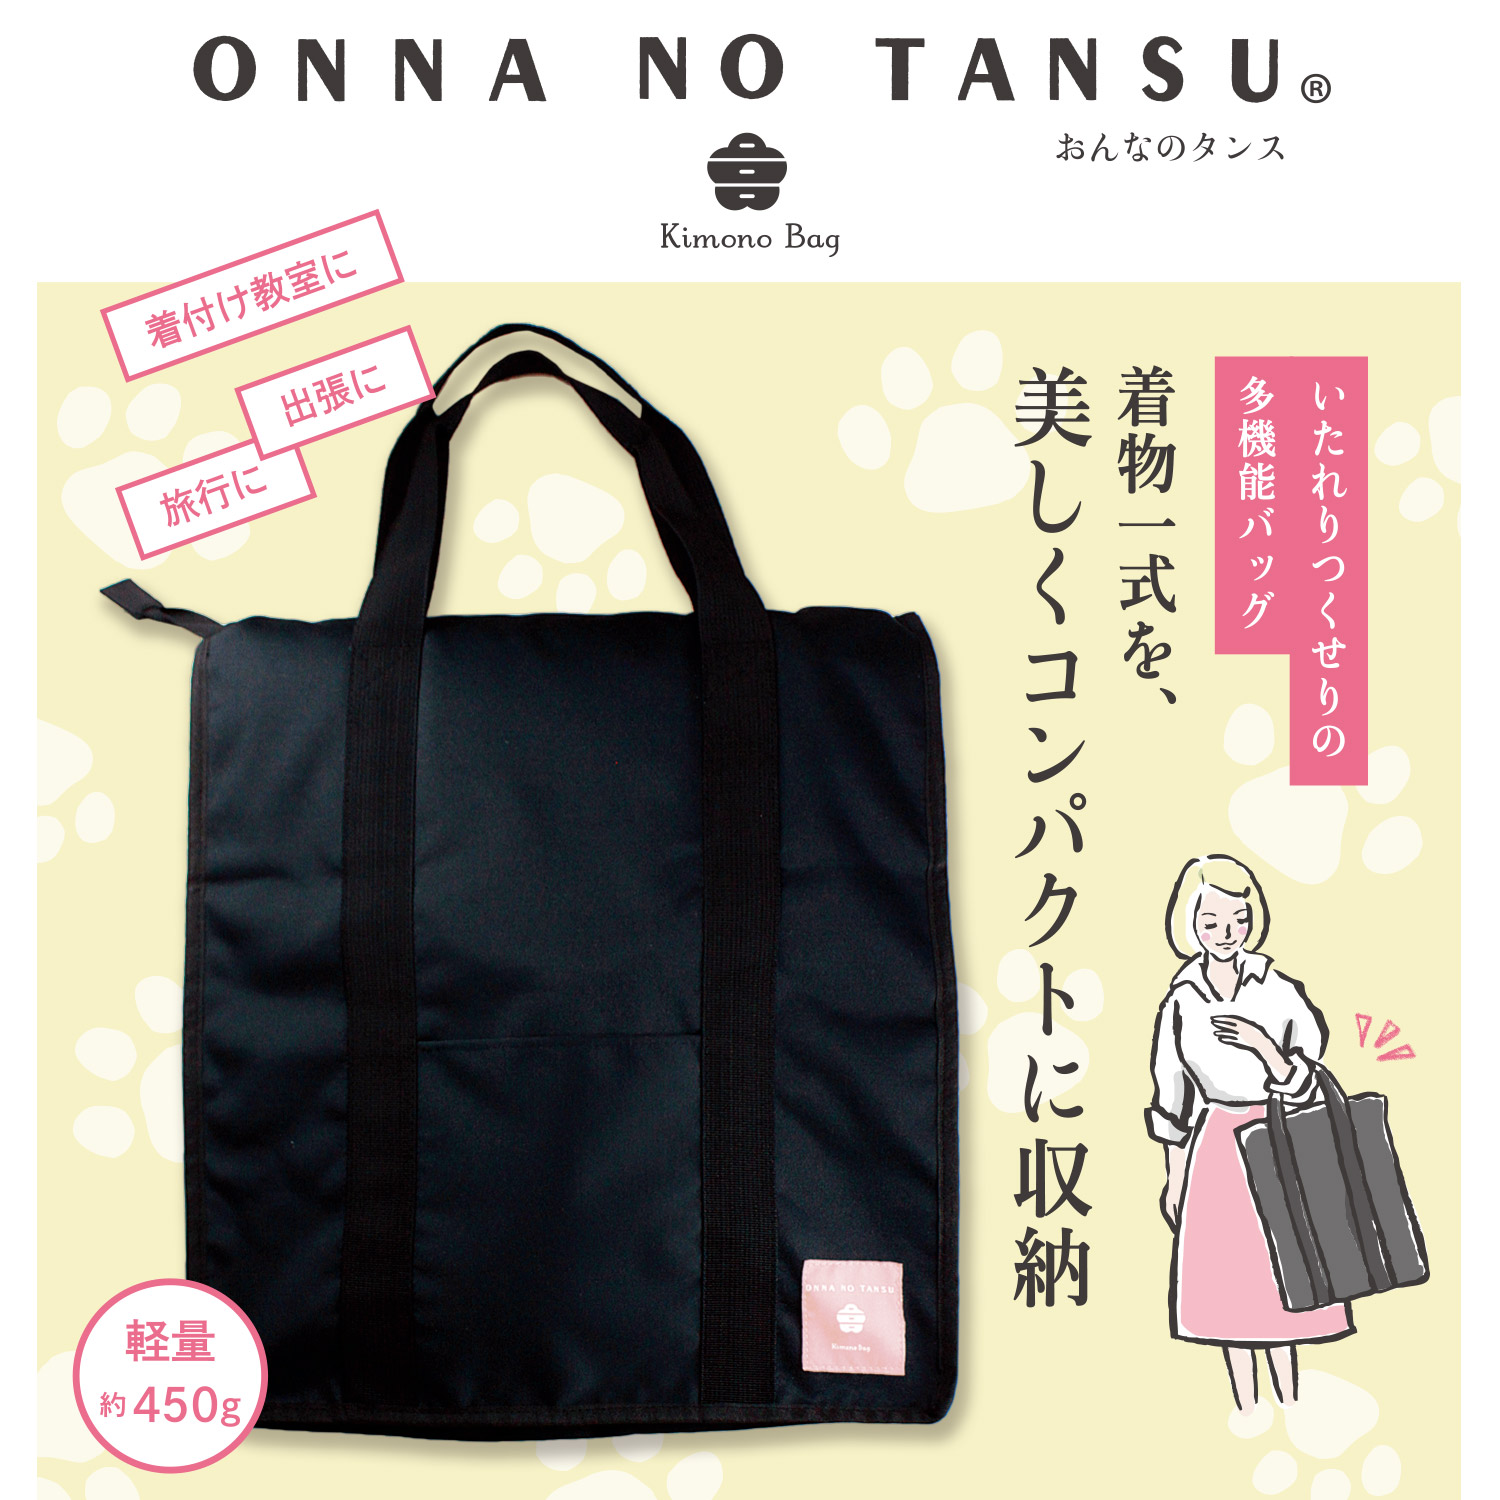 全3色展開 / 軽量・持ち運びに便利なきものバッグ 「ONNA NO TANSU」猫物語